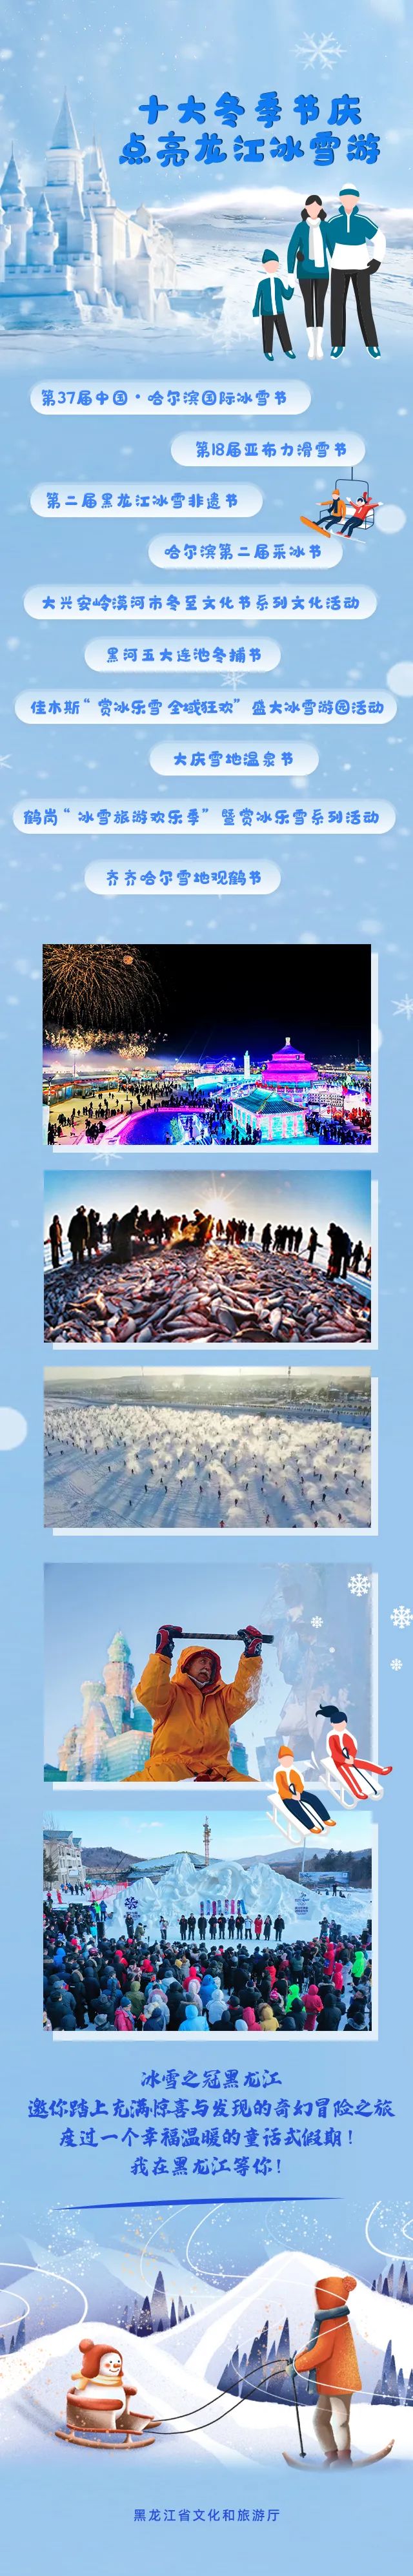 解锁冬日的童话，冰雪旅游嗨翻天！2020年黑龙江冬季旅游产品线路速览